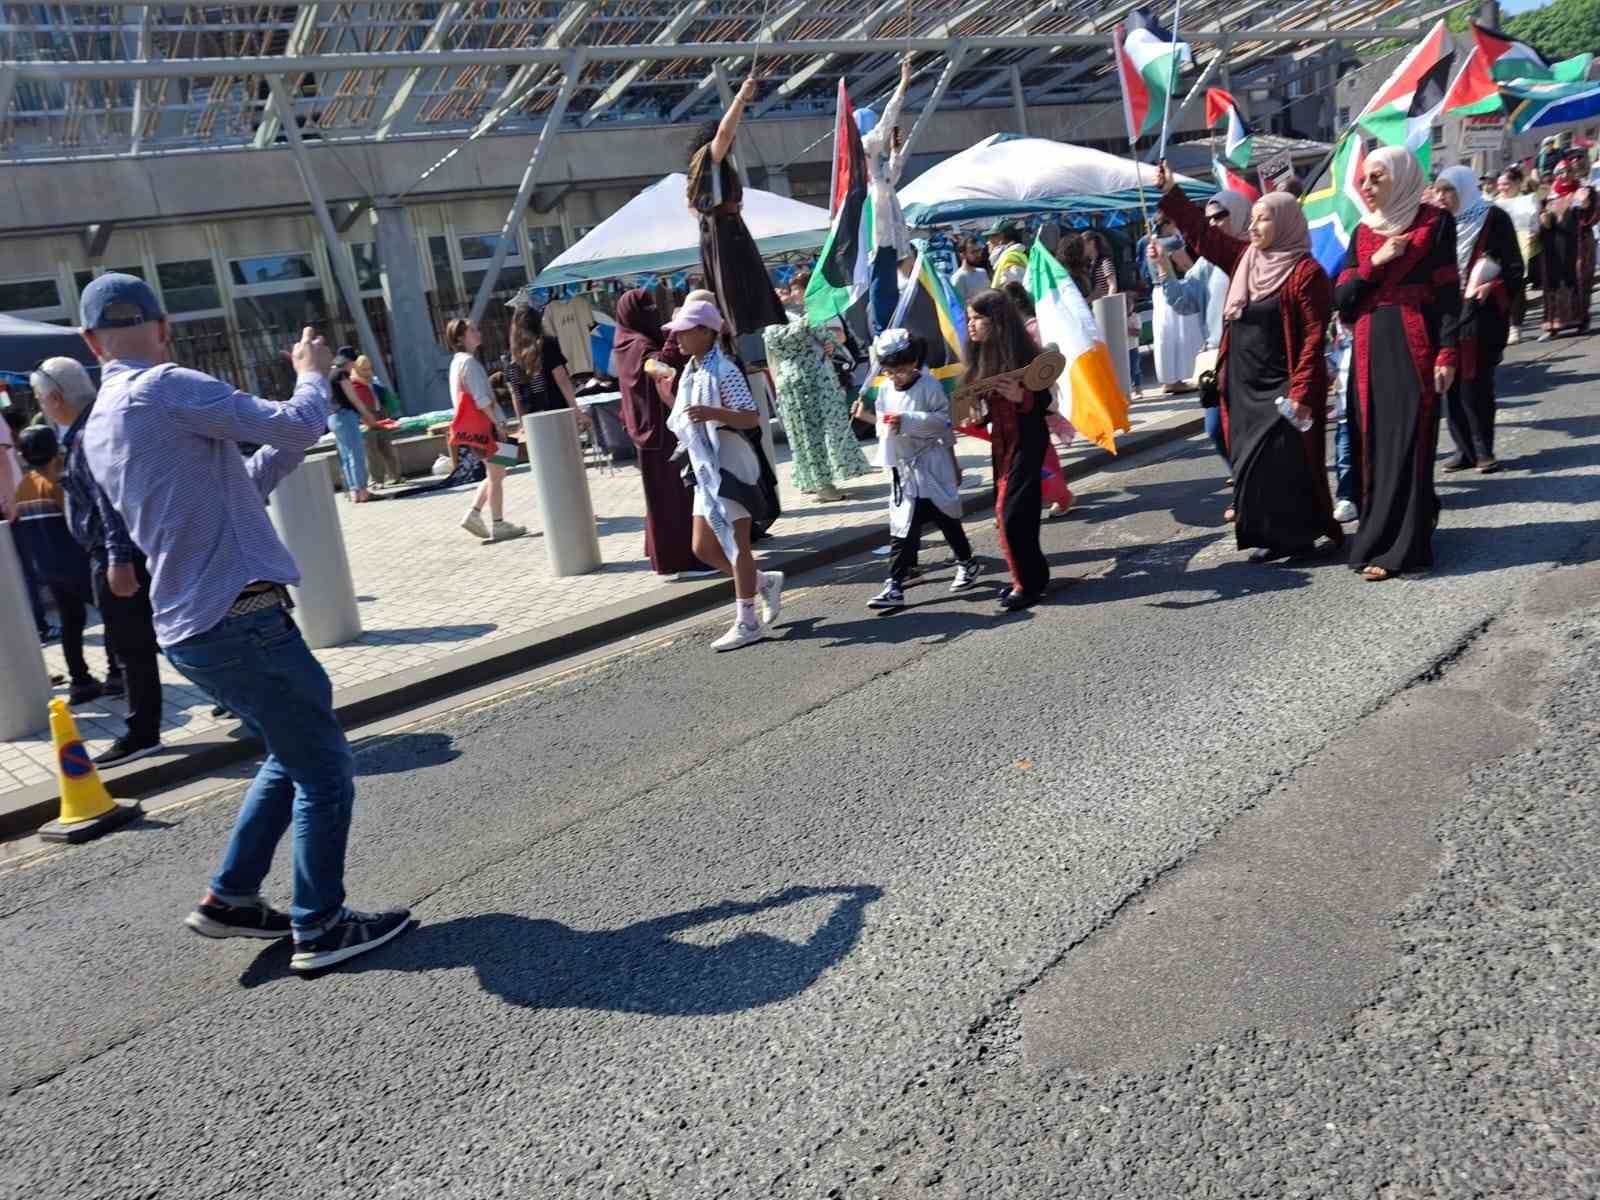 İskoçya’da Filistin’e destek sürüyor: “Barış sağlanana kadar meydanlardayız”